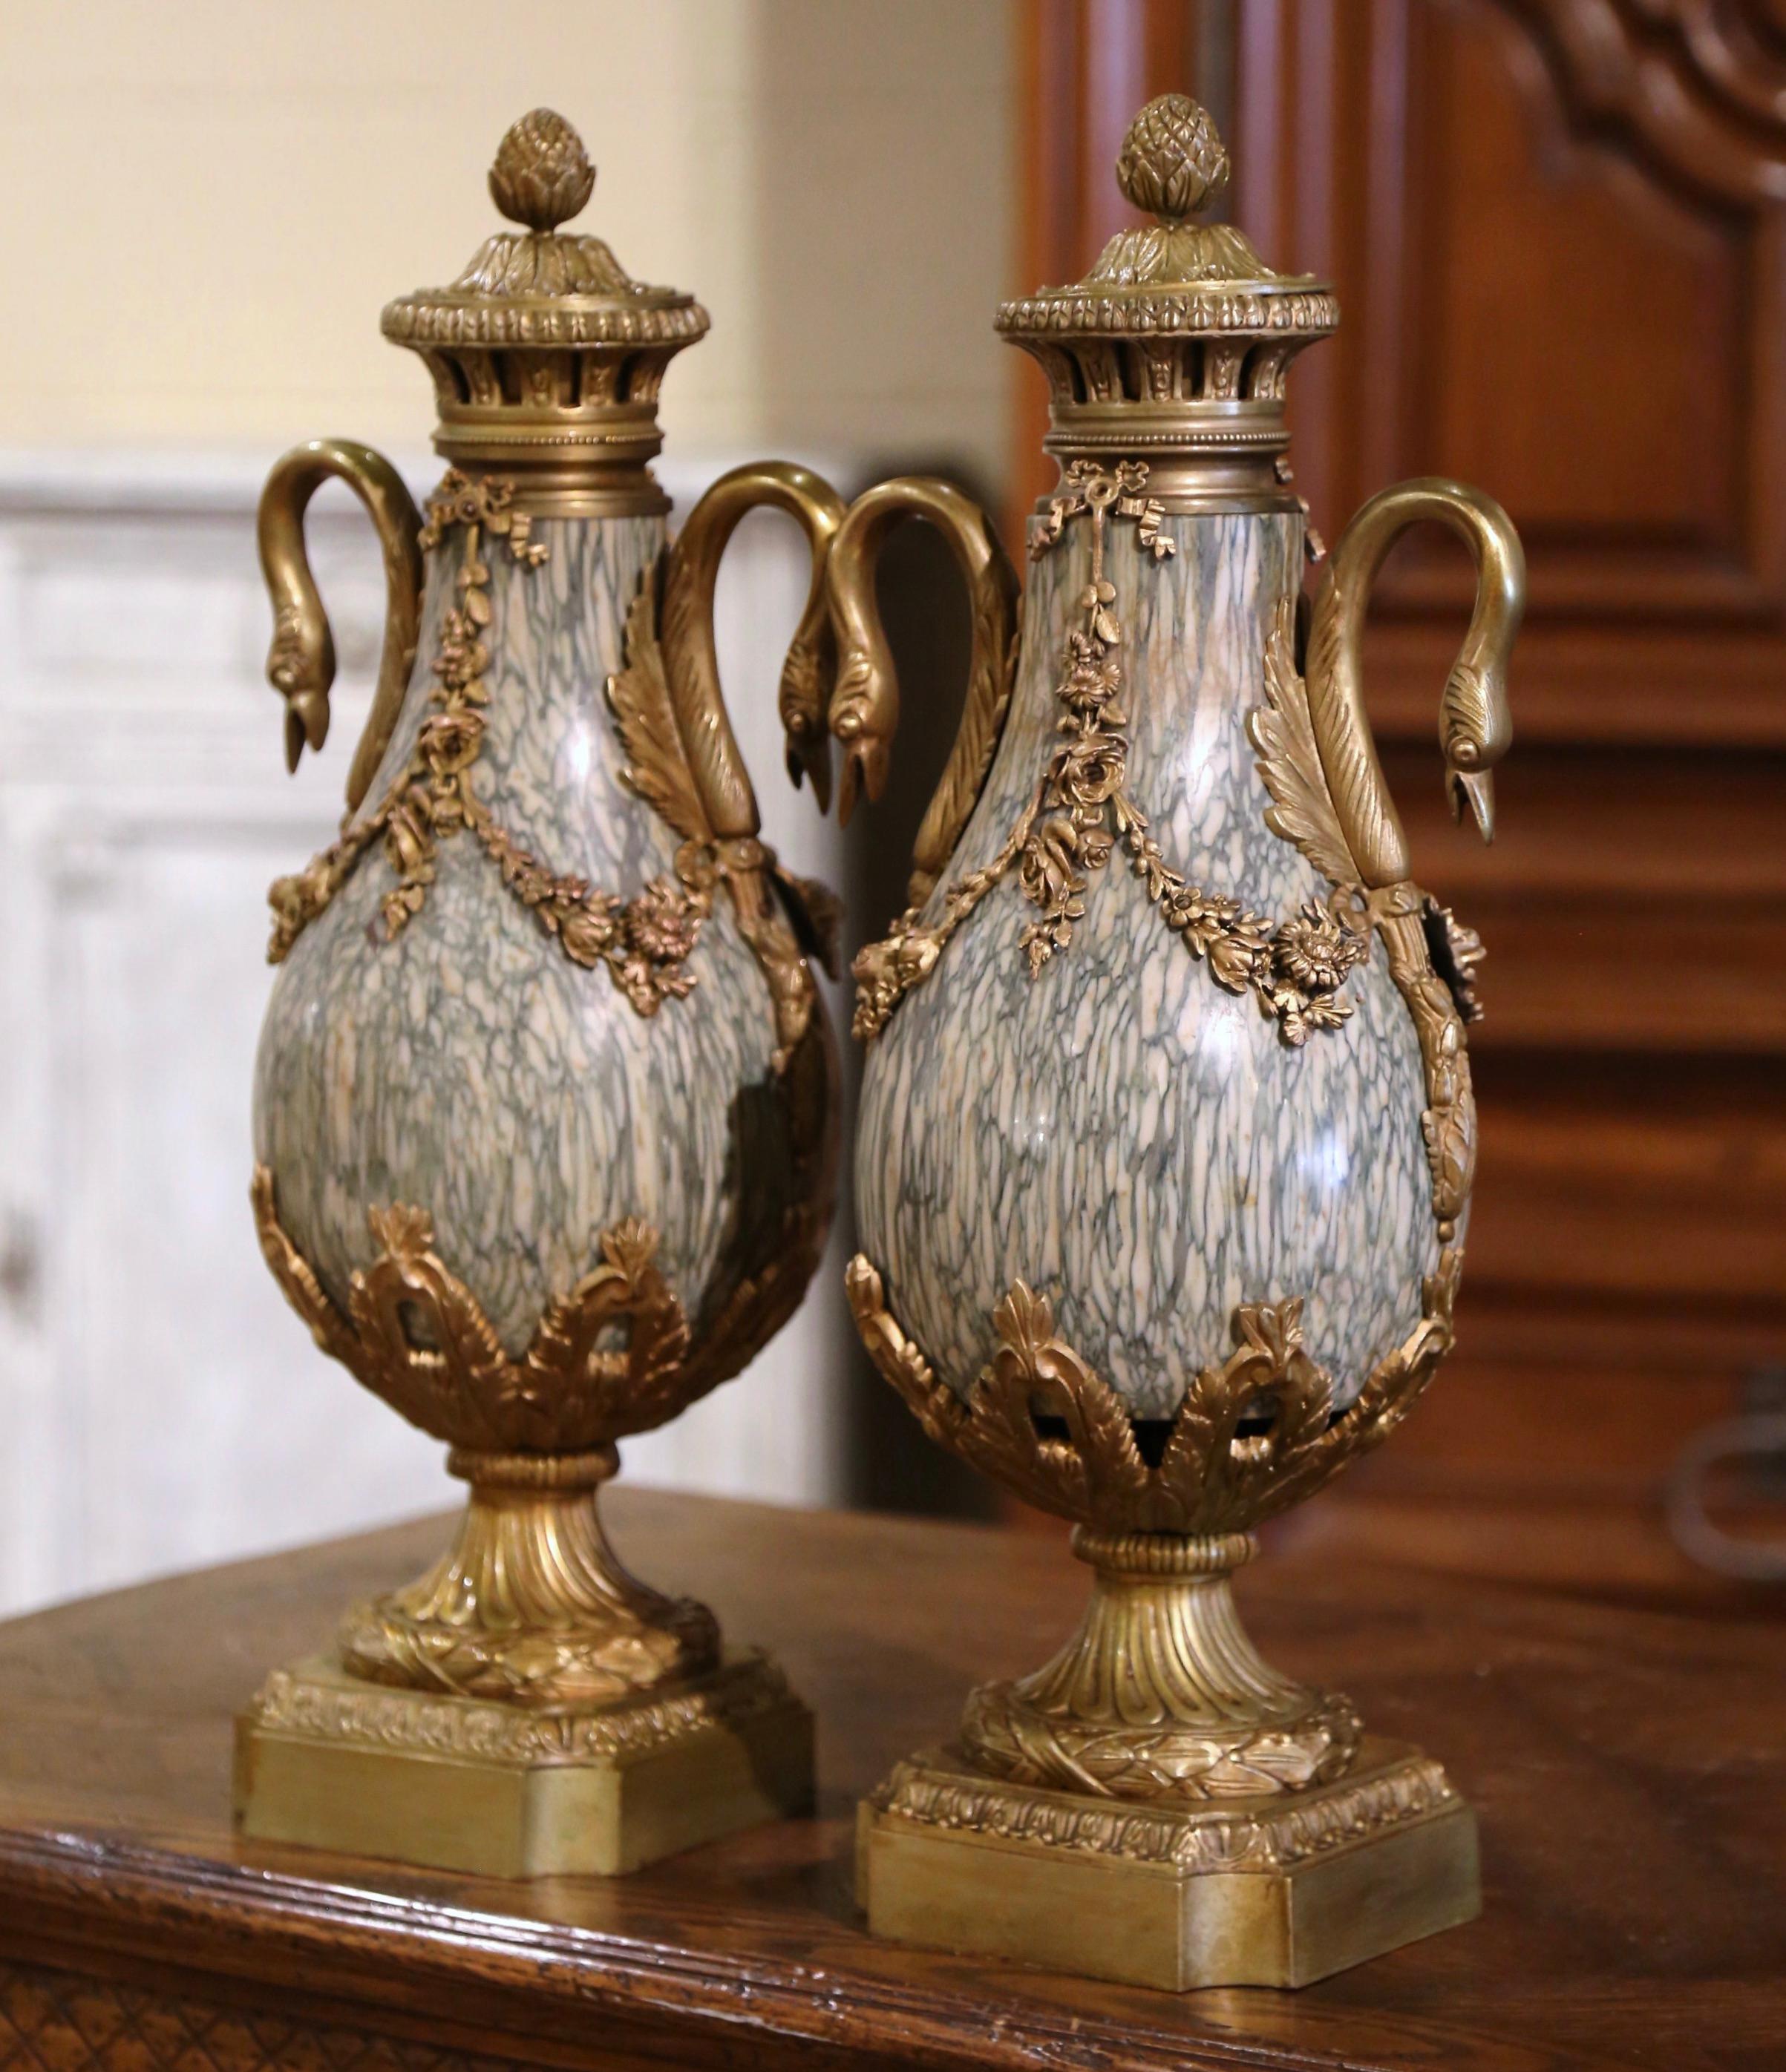 Décorez une cheminée ou un buffet avec cette paire d'urnes antiques colorées. Fabriqué en France, vers 1870, chaque récipient repose sur une base carrée en bronze décorée d'un coin concave. Chaque cassolette est habillée d'un couvercle orné d'un